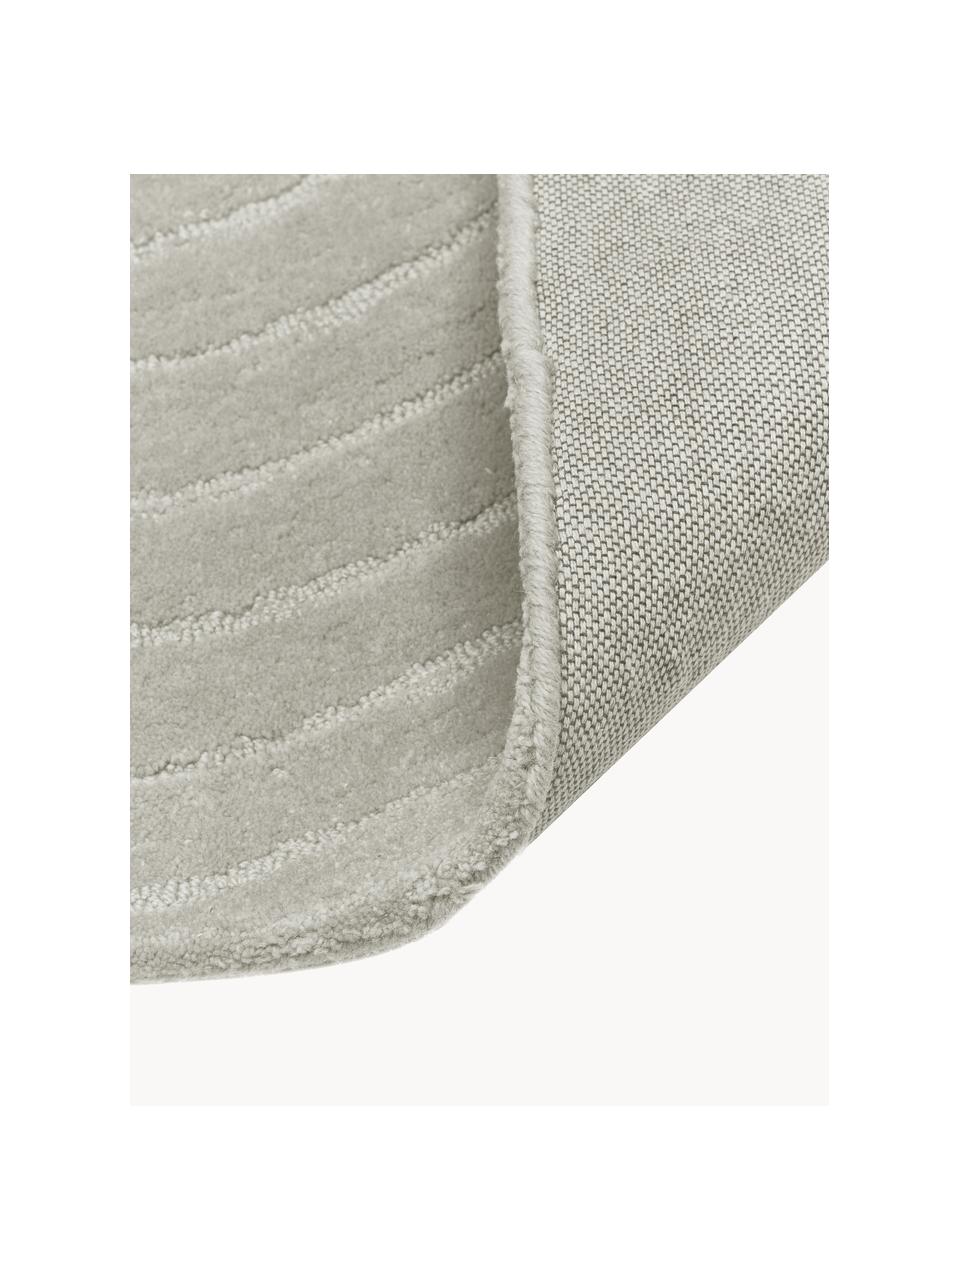 Handgetufteter Wollteppich Mason, Flor: 100 % Wolle, Hellgrau, B 160 x L 230 cm (Größe M)